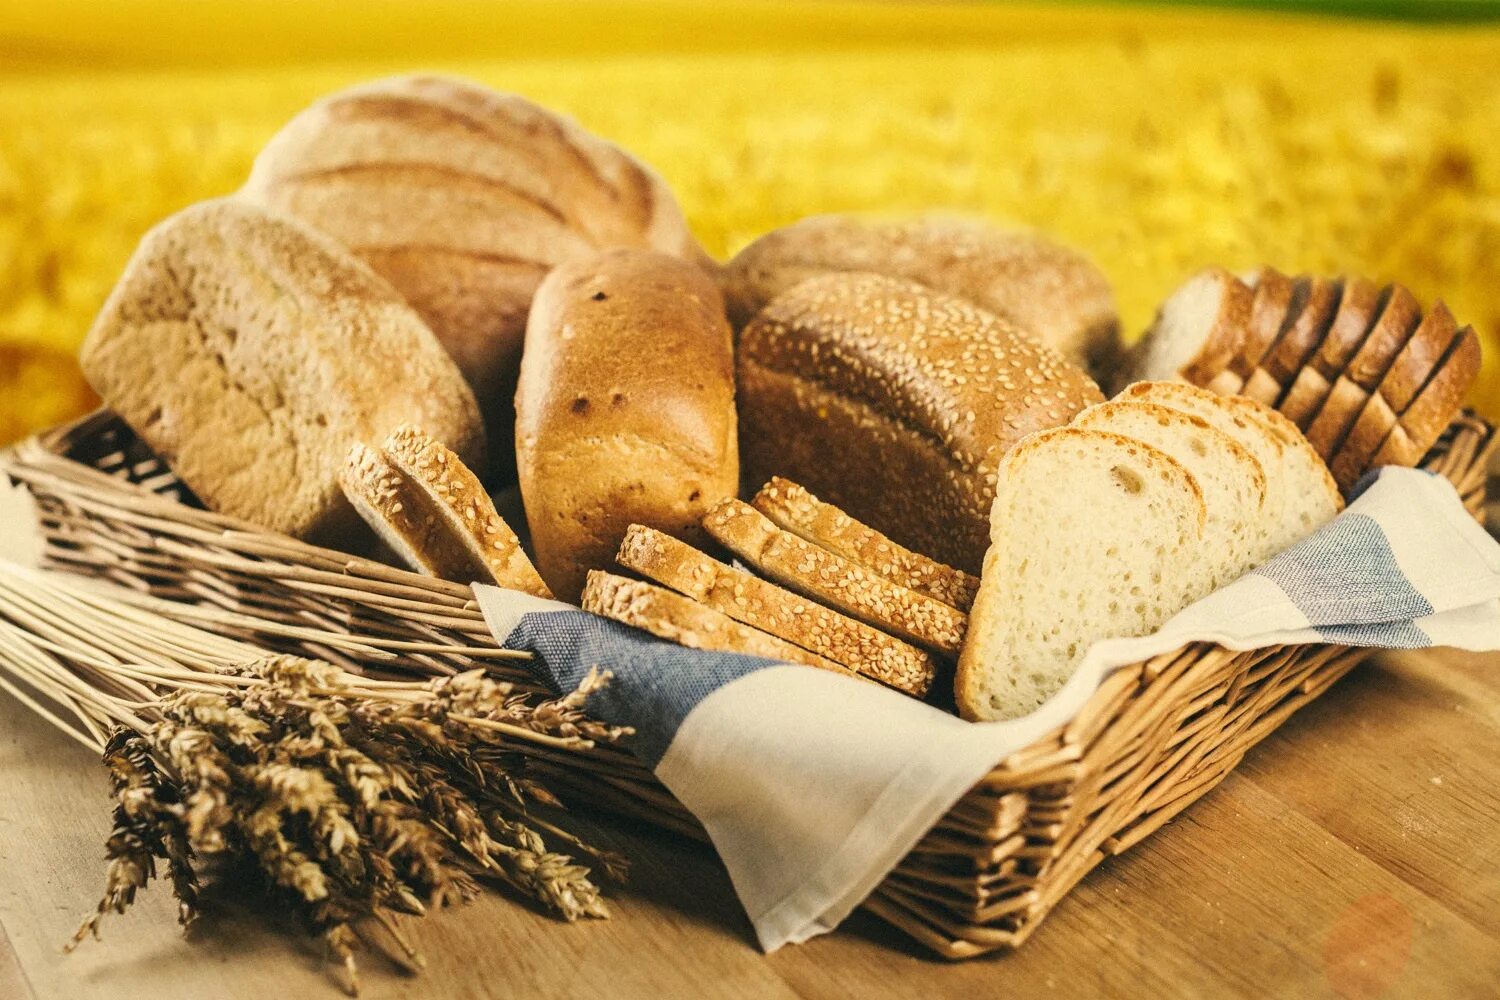 Хлеб и хлебобулочные изделия. Производители хлеба и хлебобулочных изделий. Хлебобулочная промышленность. Хлеб и продукты хлебопекарной промышленности. Сырье производства хлебобулочных изделий